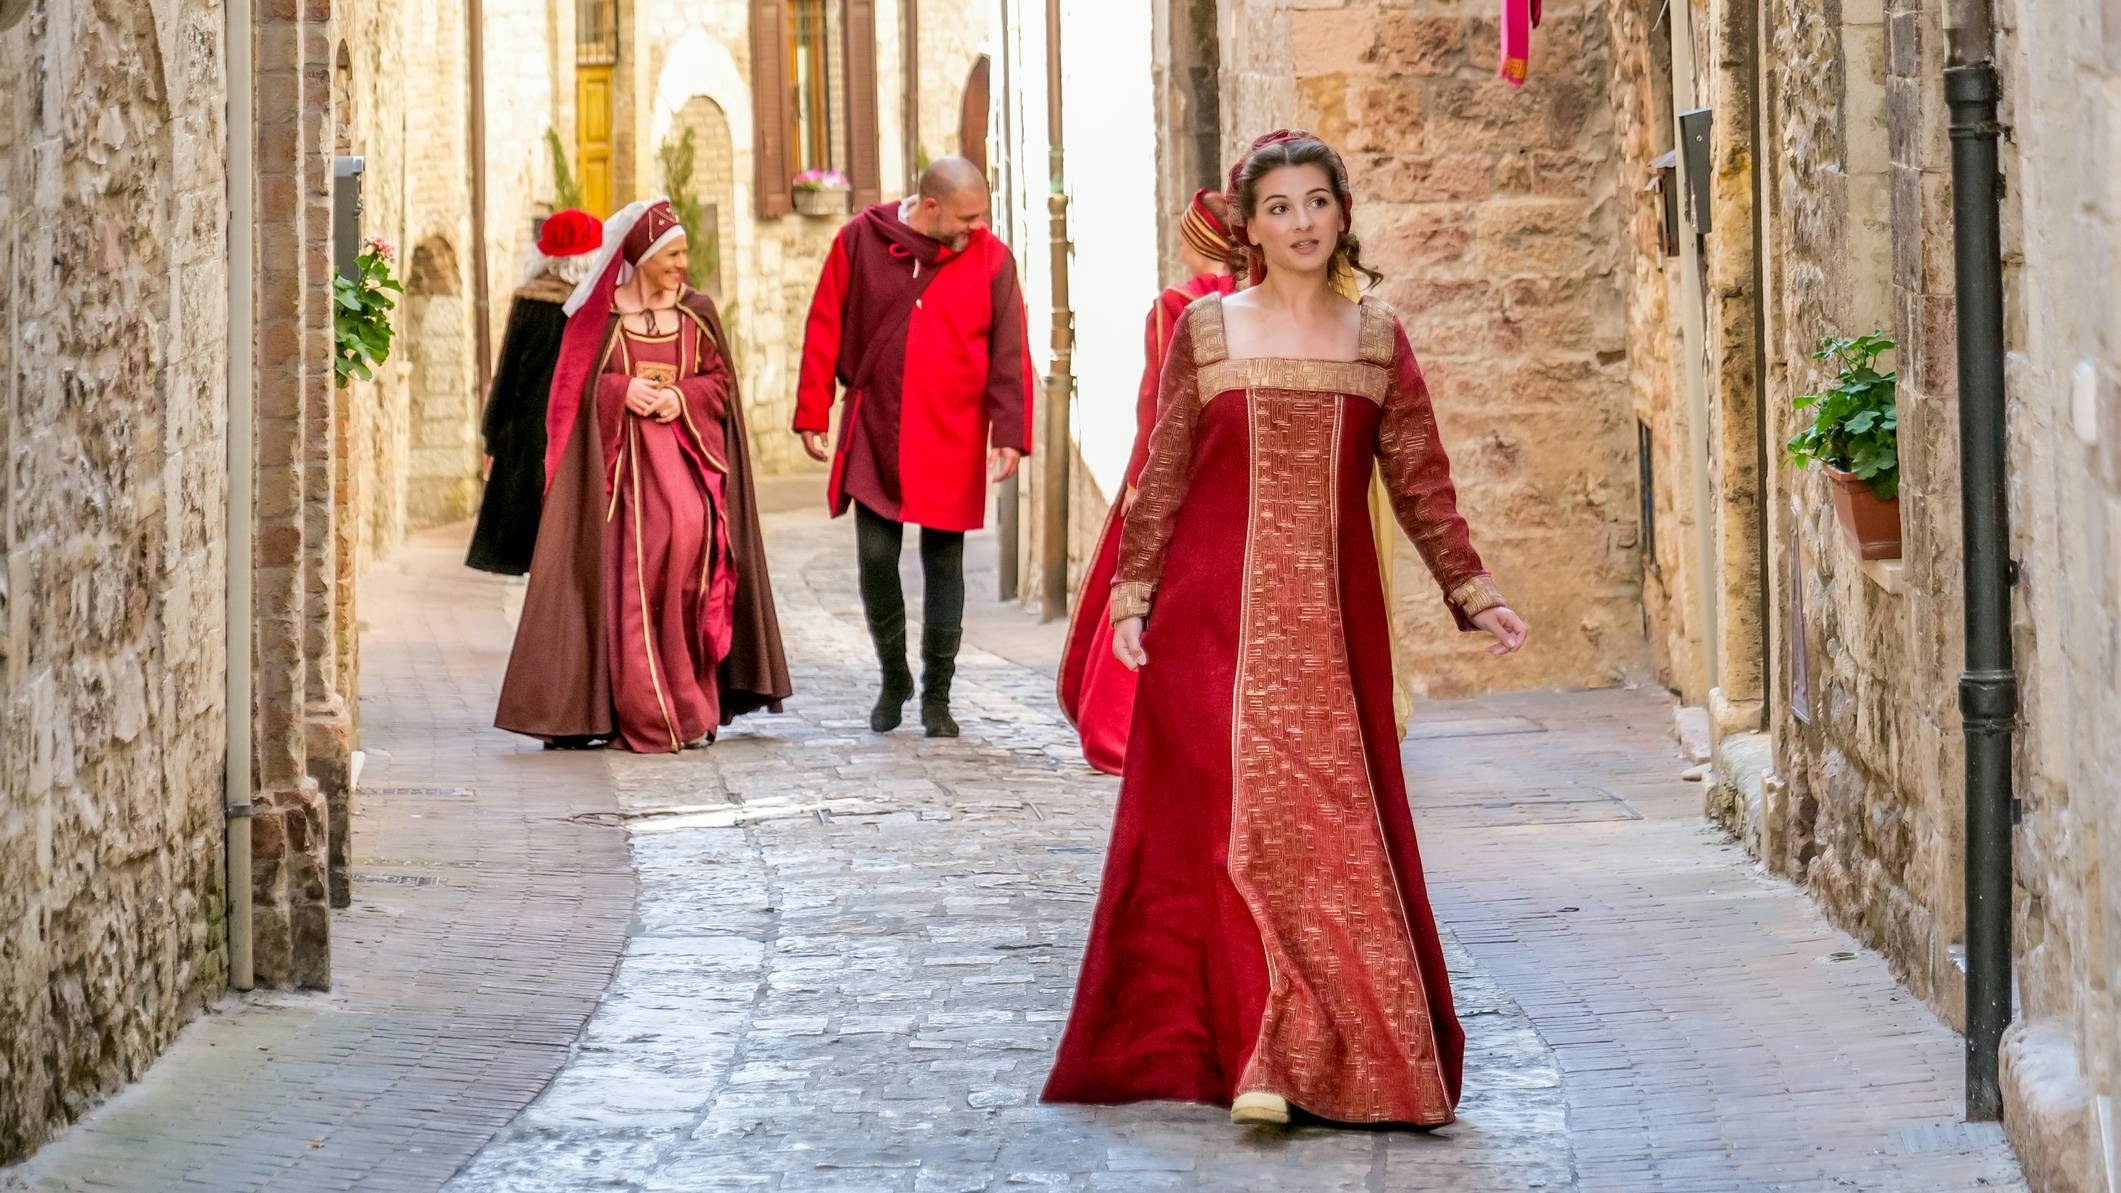 Ragazza in costume d'epoca per il Calendimaggio ad Assisi